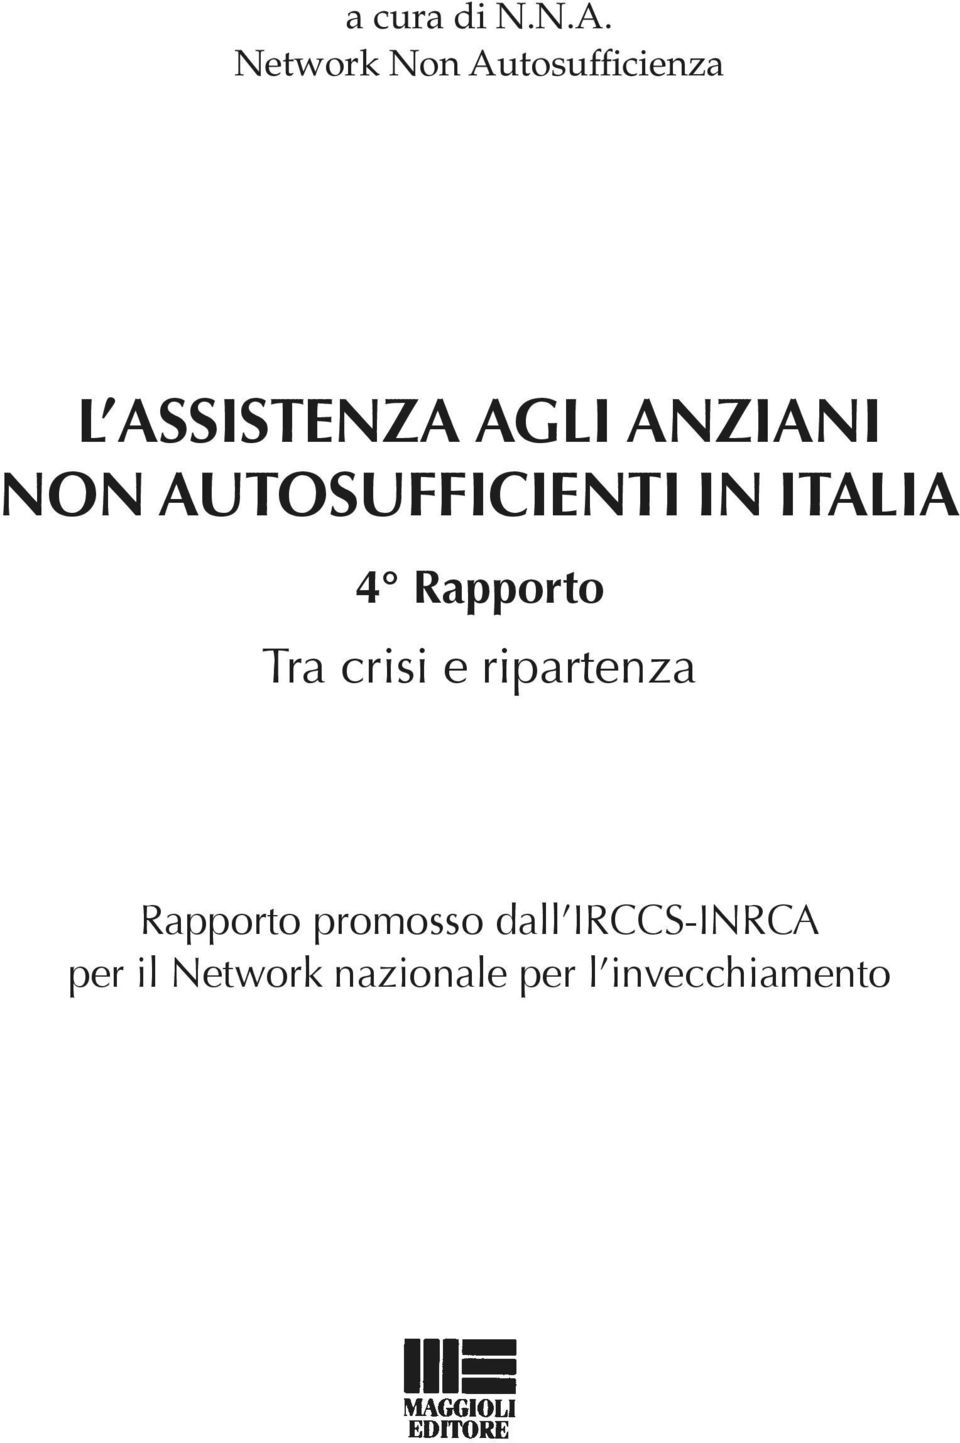 NON AUTOSUFFICIENTI IN ITALIA 4 Rapporto Tra crisi e